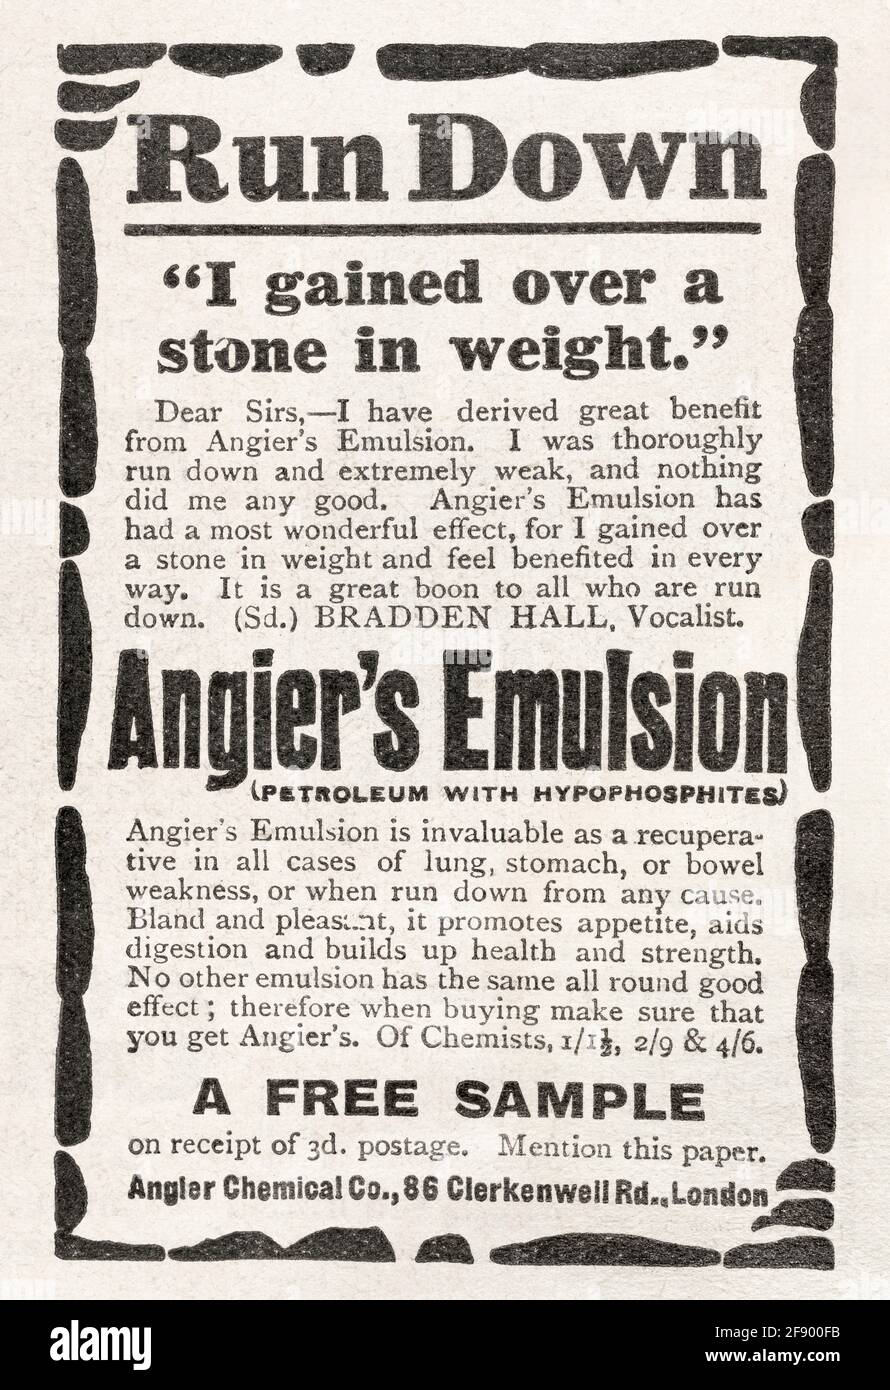 Angier's Emulsion, ein altes medizinisches Werbemittel aus dem Jahr 1911 - Standards für die Vorwerbung. Geschichte der medizinischen Werbung, alte Gesundheitsanzeigen, Schlangenöl. Stockfoto